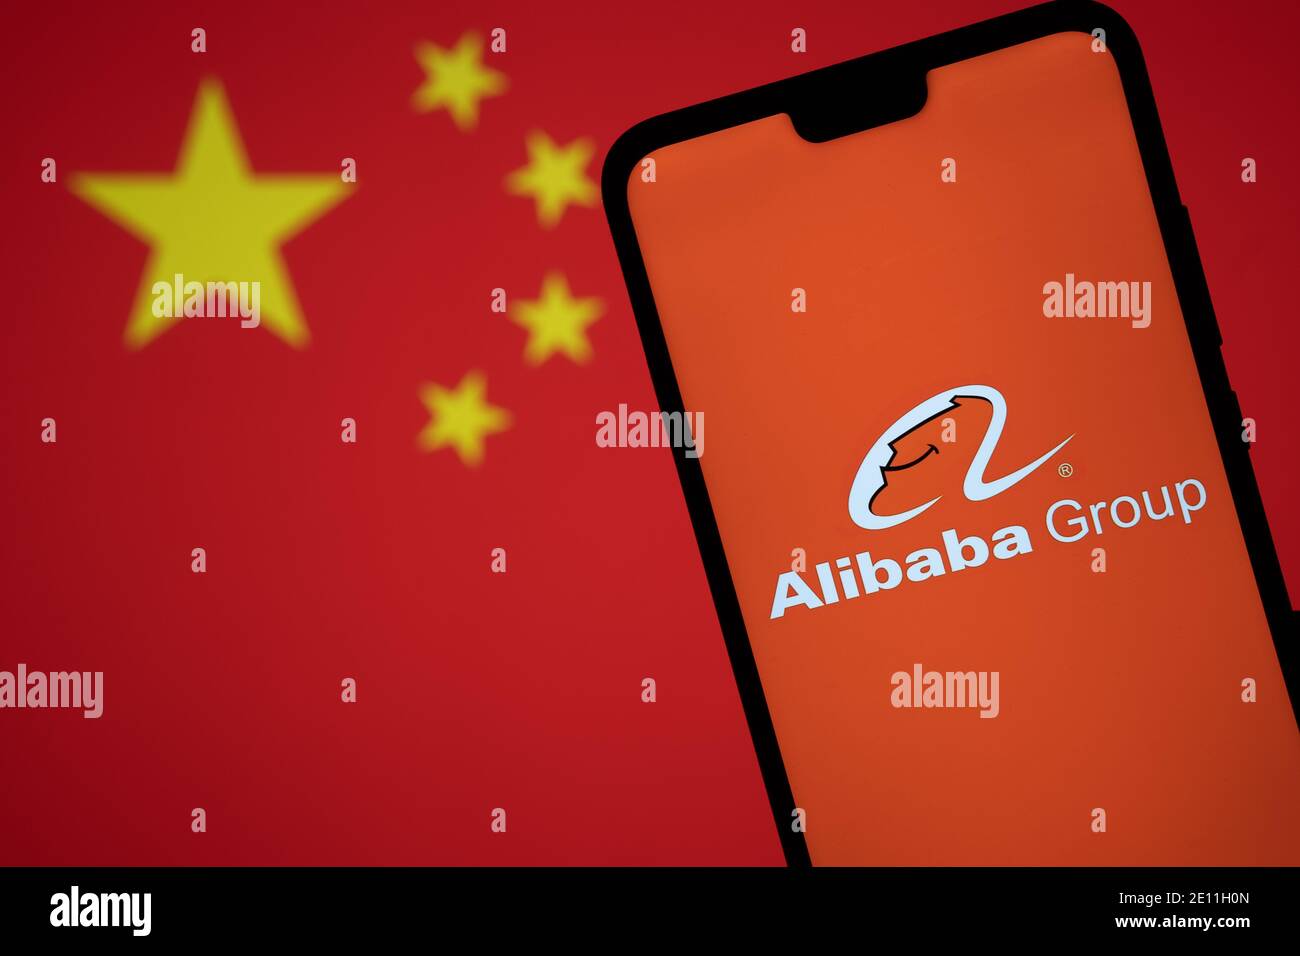 Stafford, Reino Unido - 3 de enero de 2021: Logotipo de Alibaba en una silueta de smartphone y bandera borrosa de China. Concepto para el gobierno y la tecnología g Foto de stock